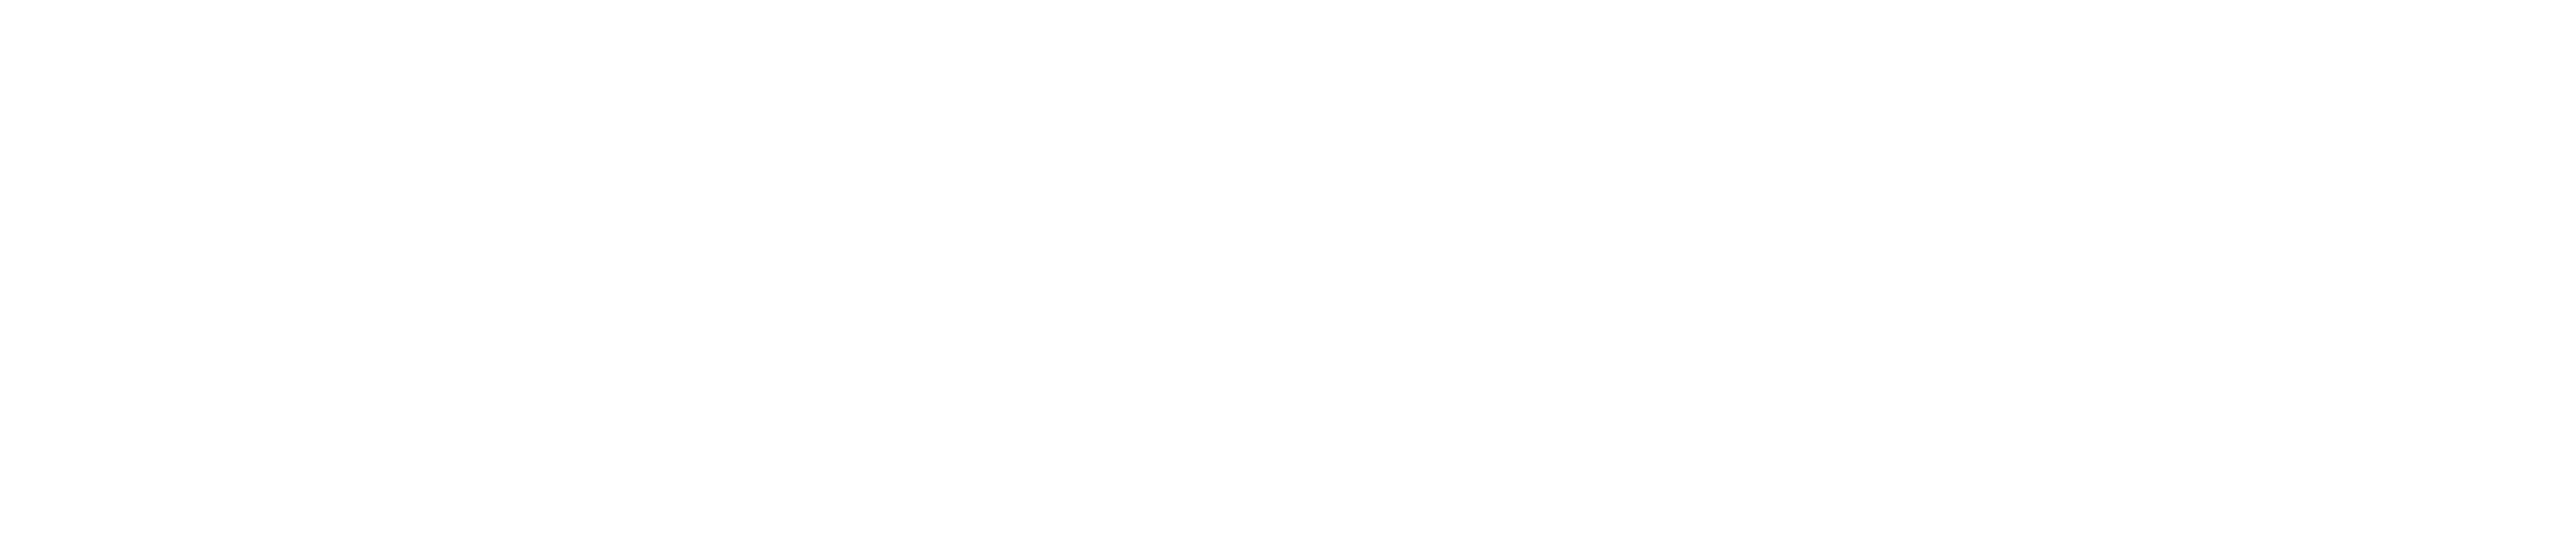 Frankfurter_Allgemeine_logo